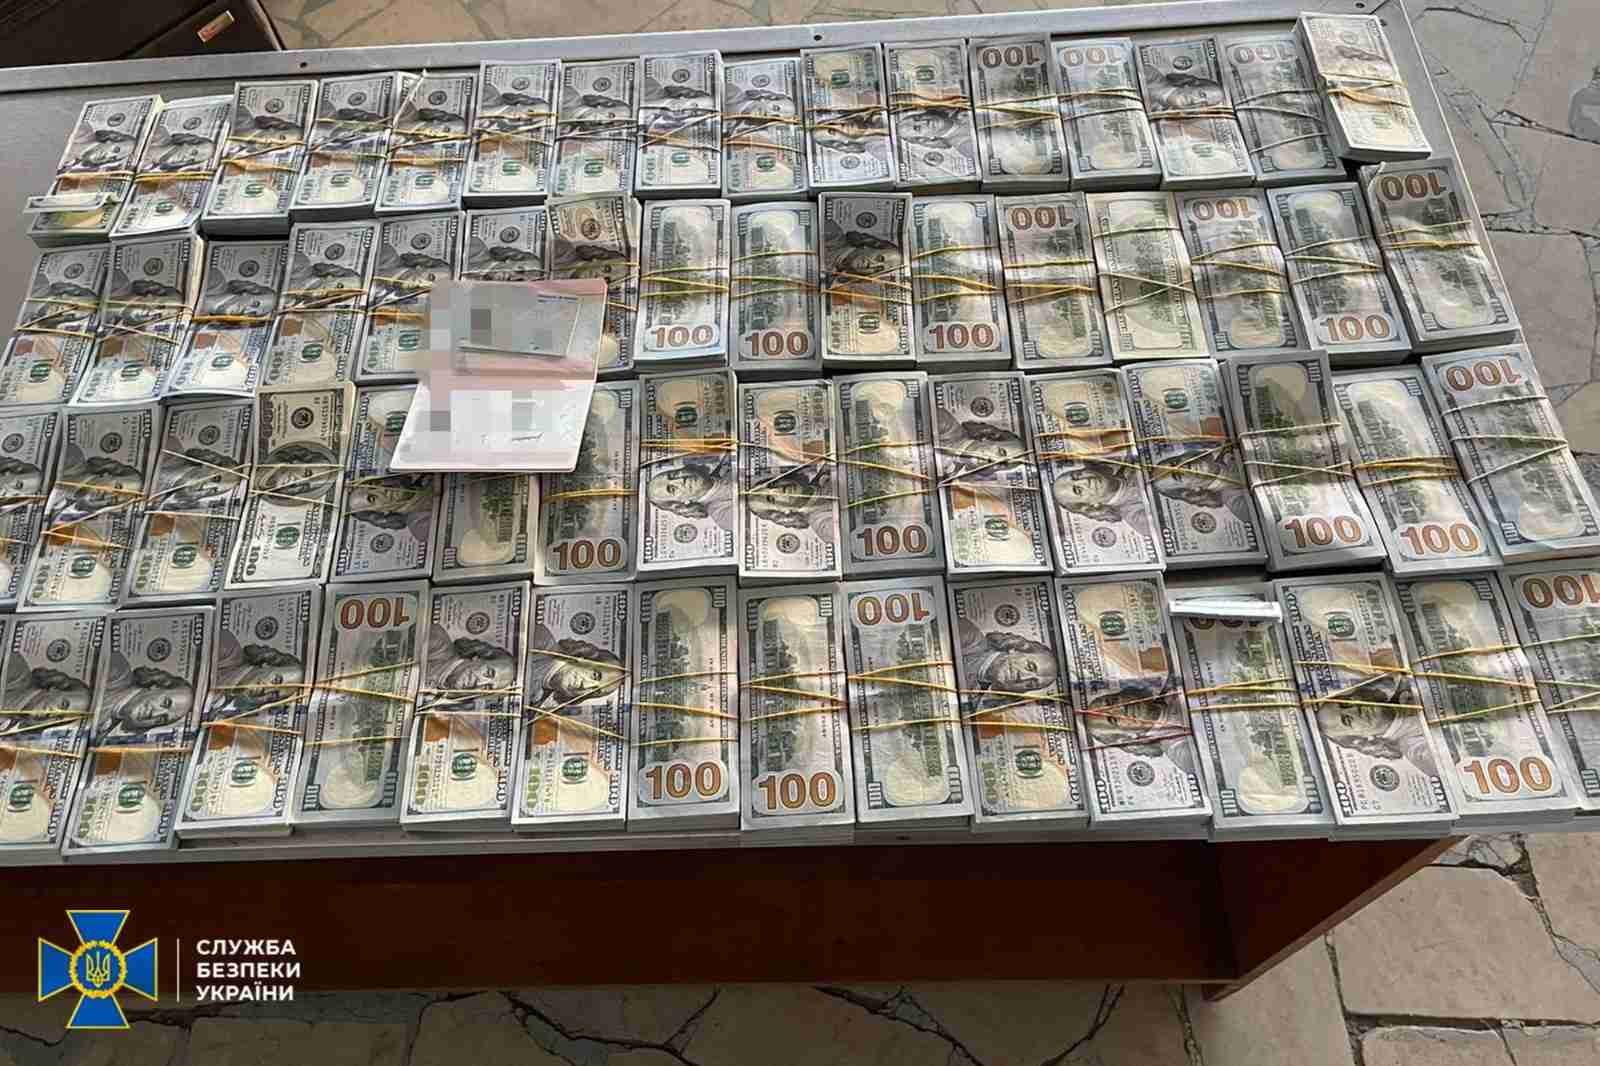 Ділки намагалися завезти до України мільйони гривень для російської агентури